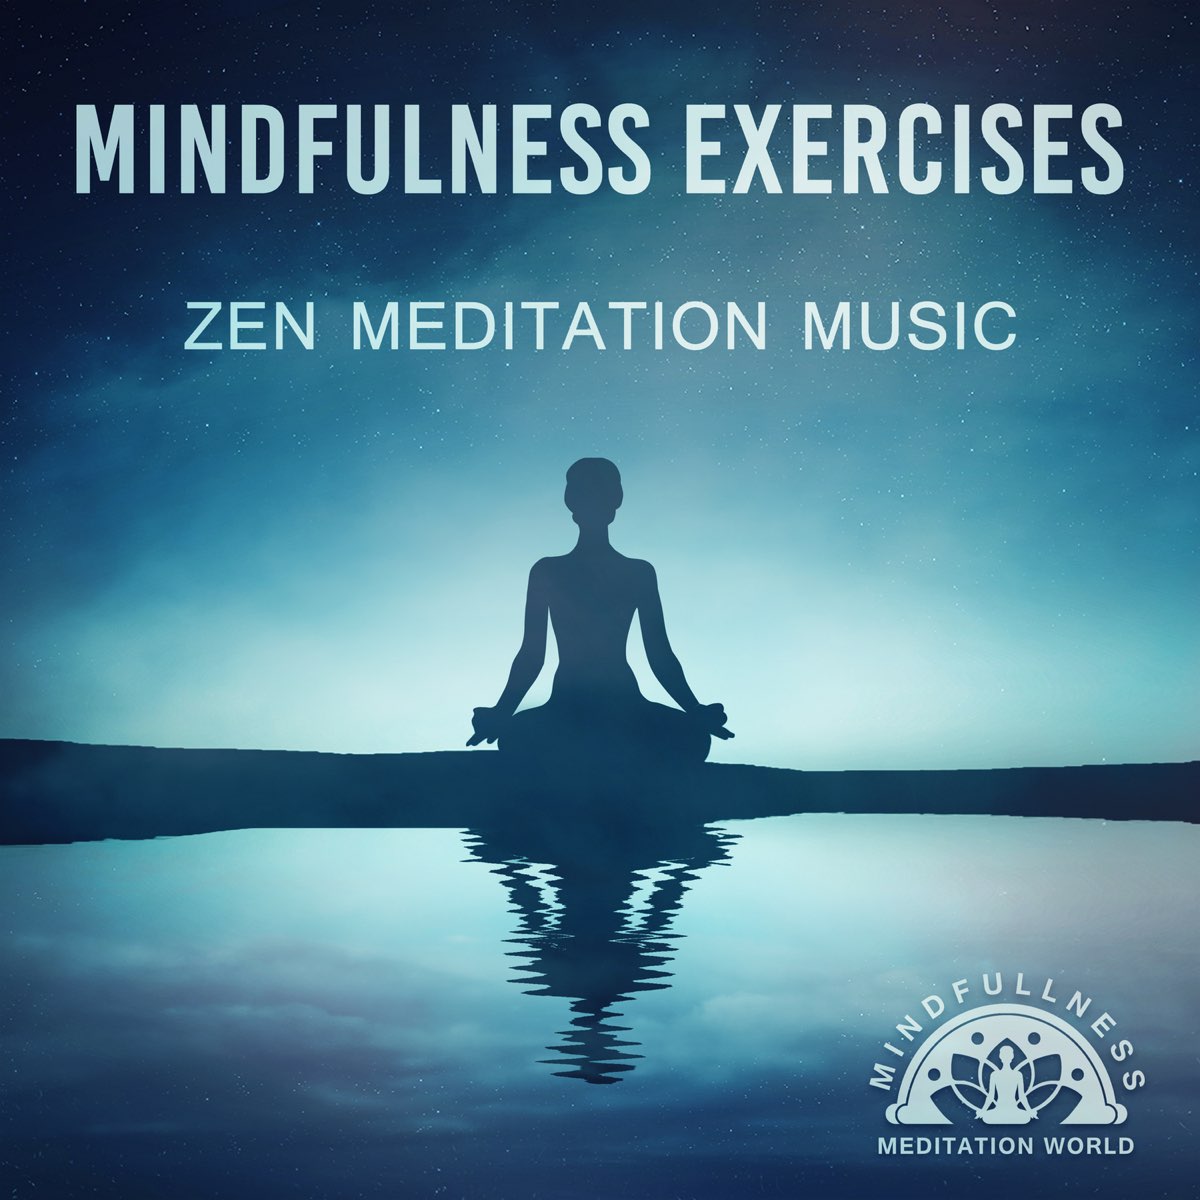 Музыка для медитации без регистрации. Медитация майндфулнесс. Музыка для медитации. Всемирный день медитации (World Meditation Day). Mindfulness exercises.